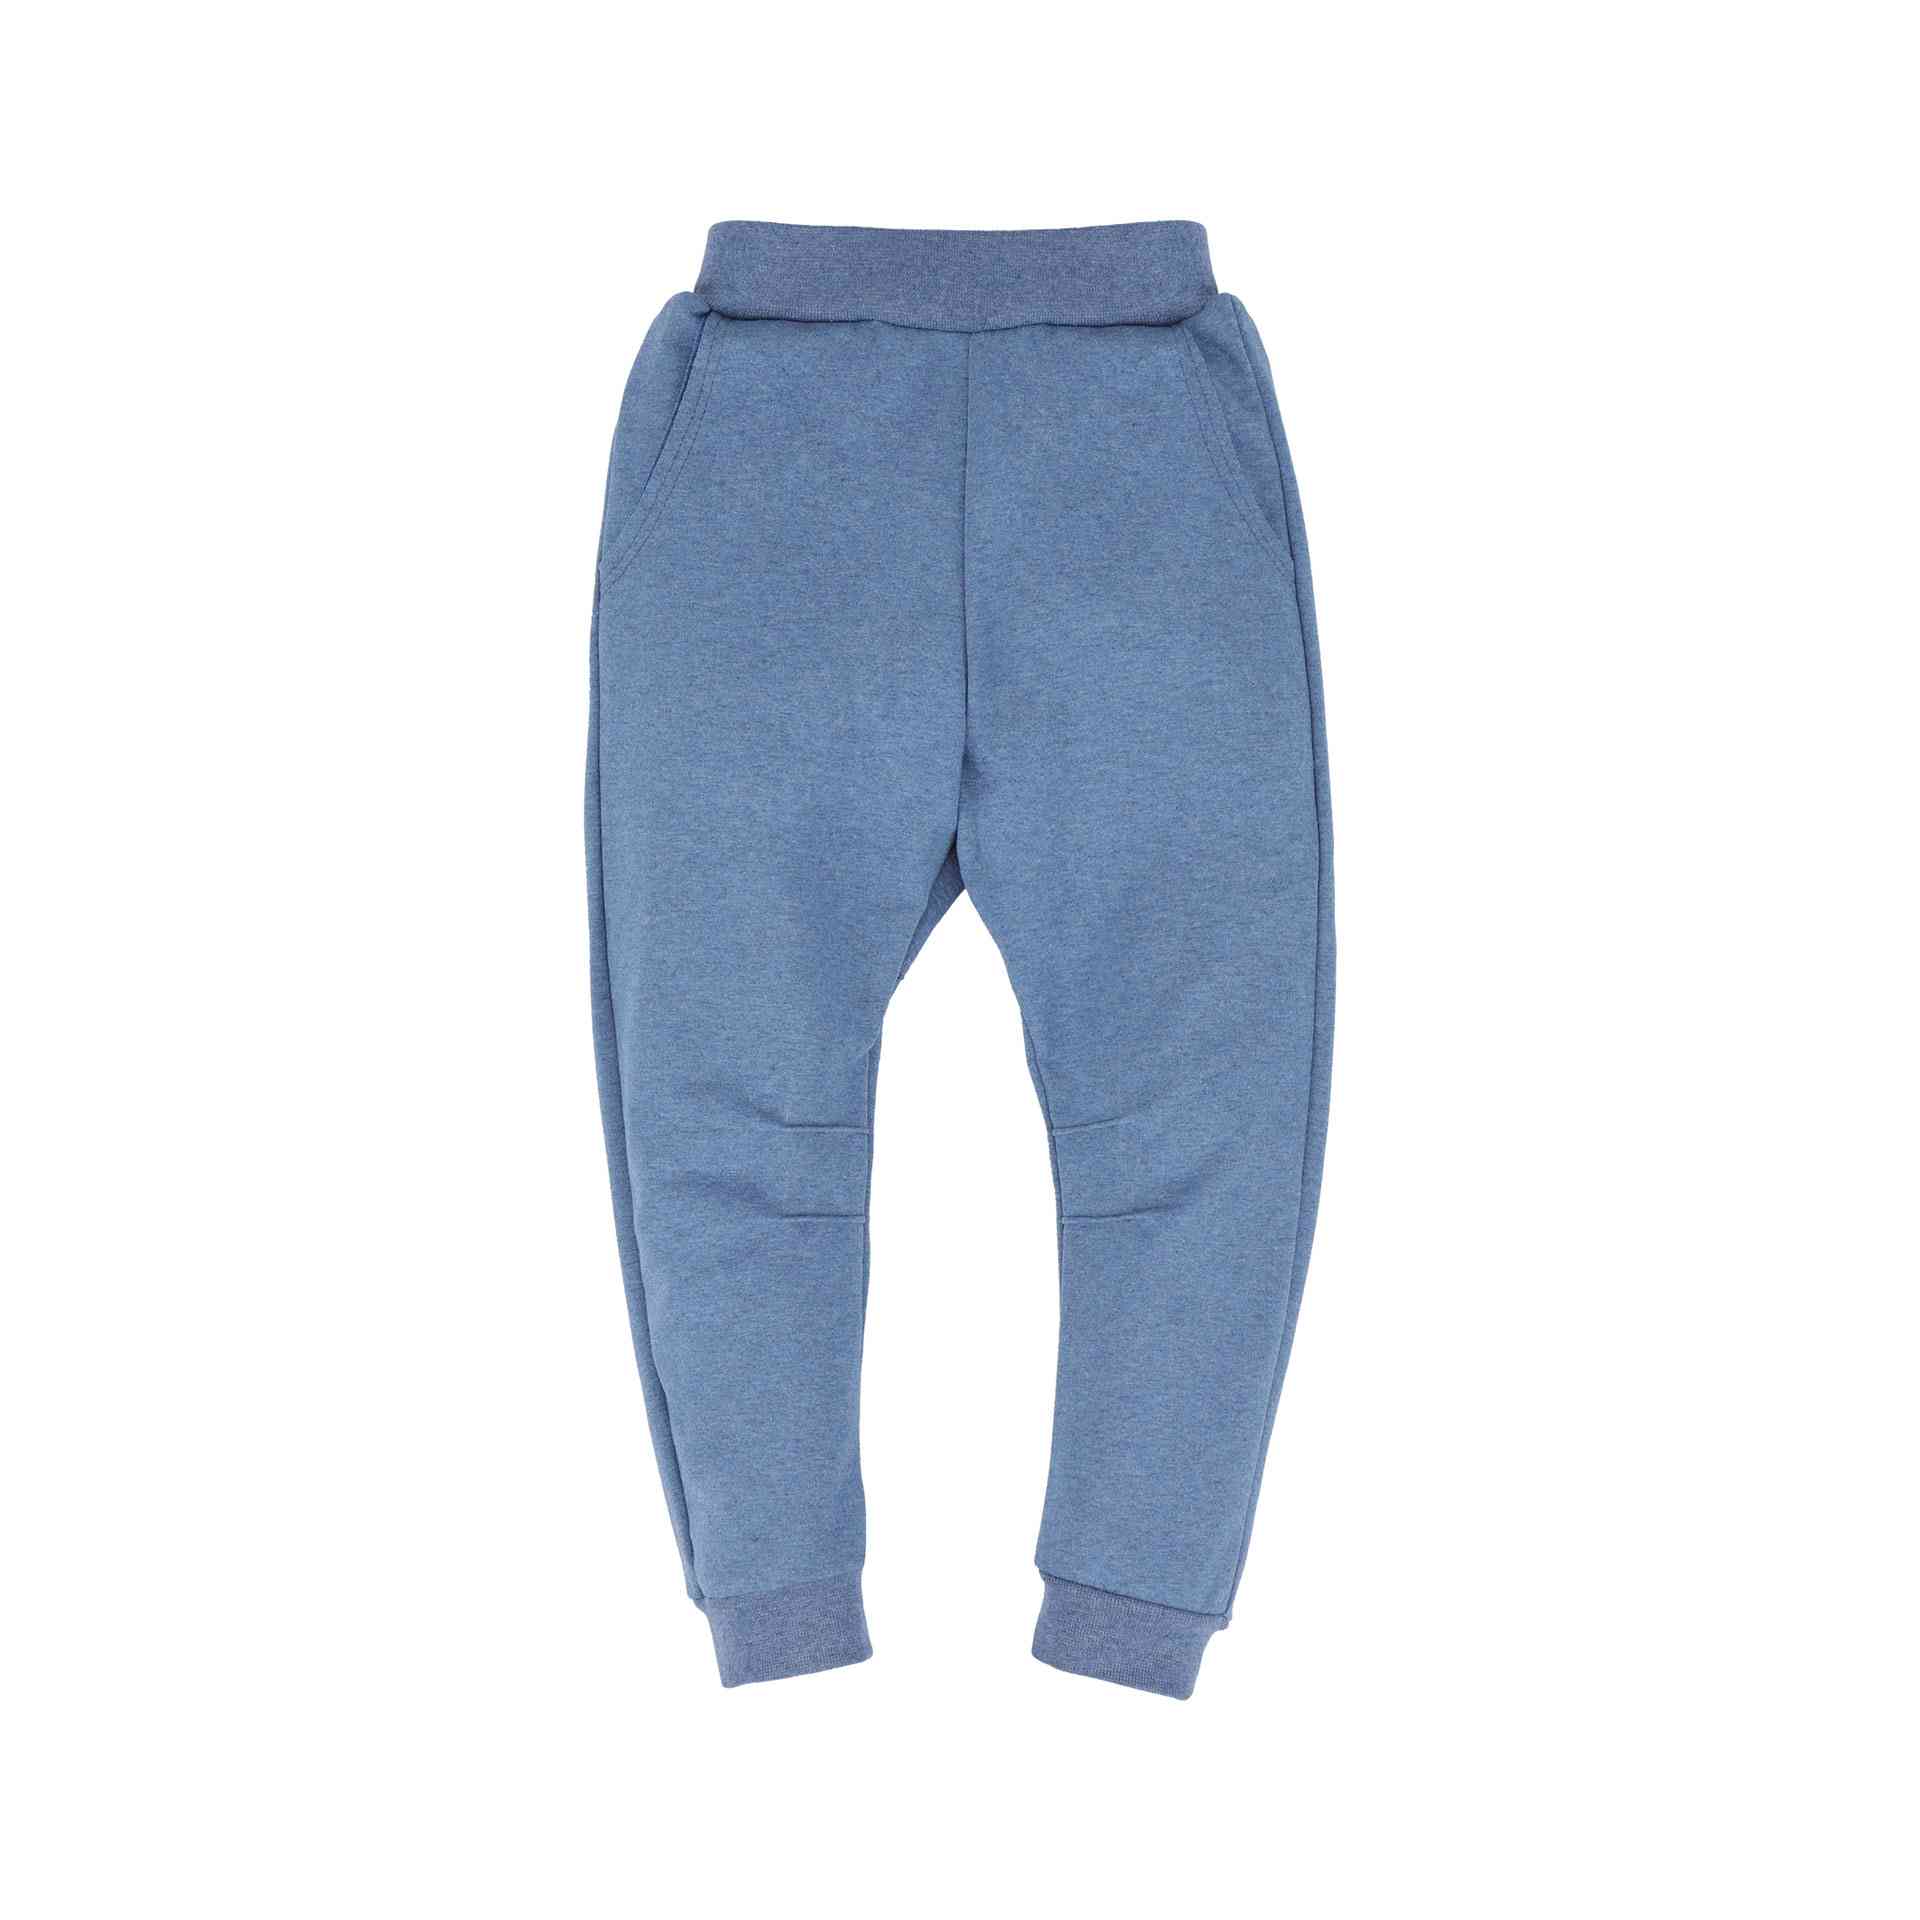 Spodnie dresowe, ocieplane dla chłopca, w kolorze niebieskim z kieszeniami naszytymi z tyłu, Tup Tup